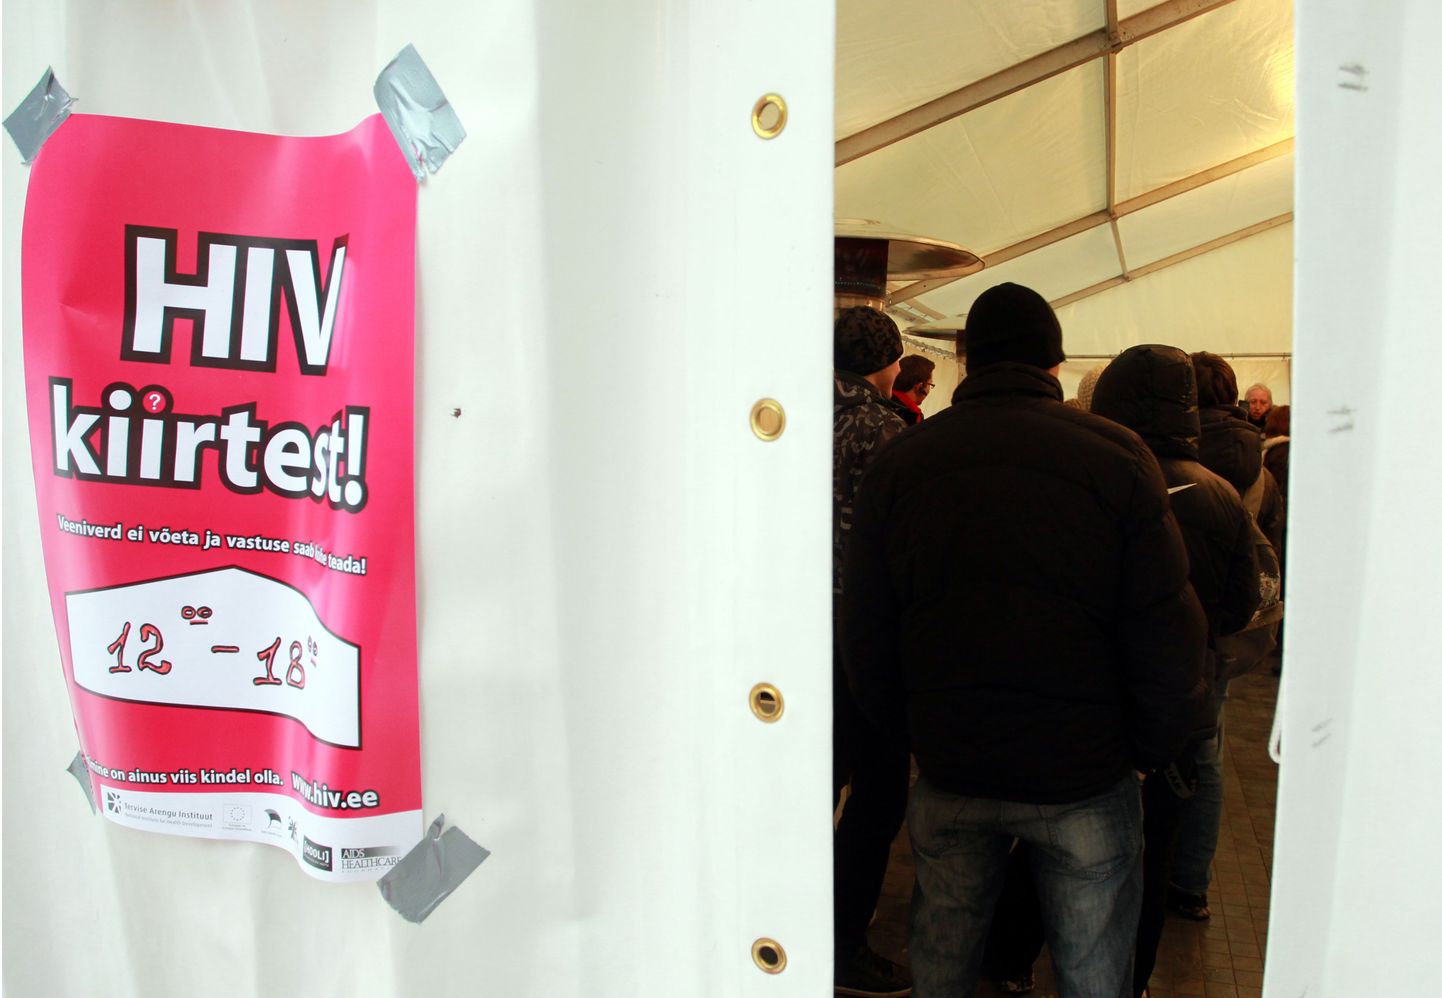 Möödunud nädalal korraldatud HIV-testimisnädalal osalenud 680 inimesest kahel avastati HI-viirus, üks neist on Pärnust. Foto on illustreeriv.